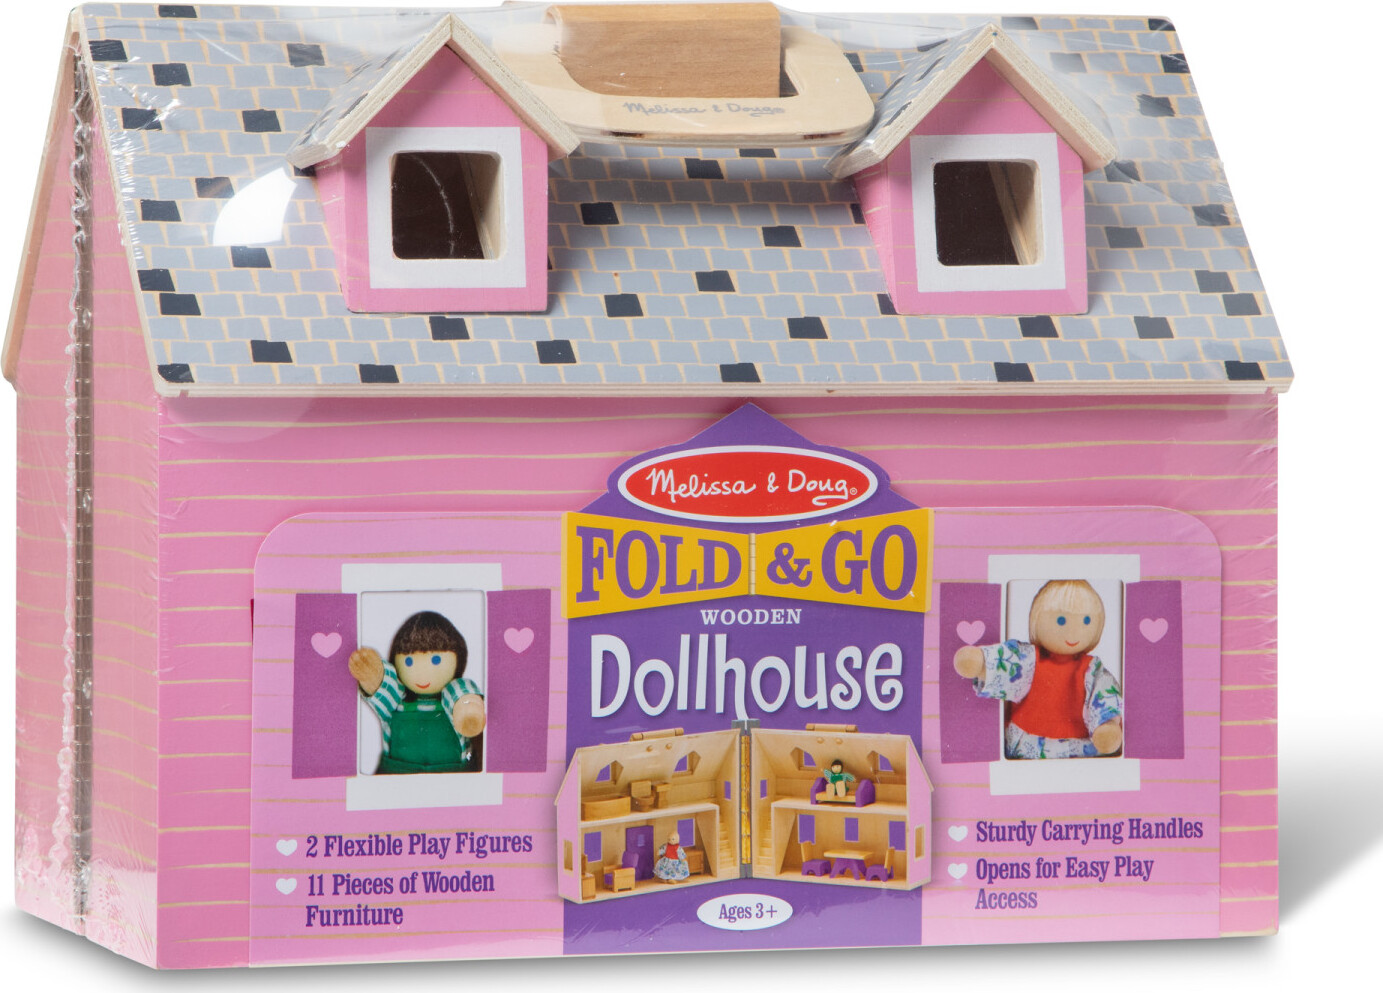 Fold  GO Dollhouse